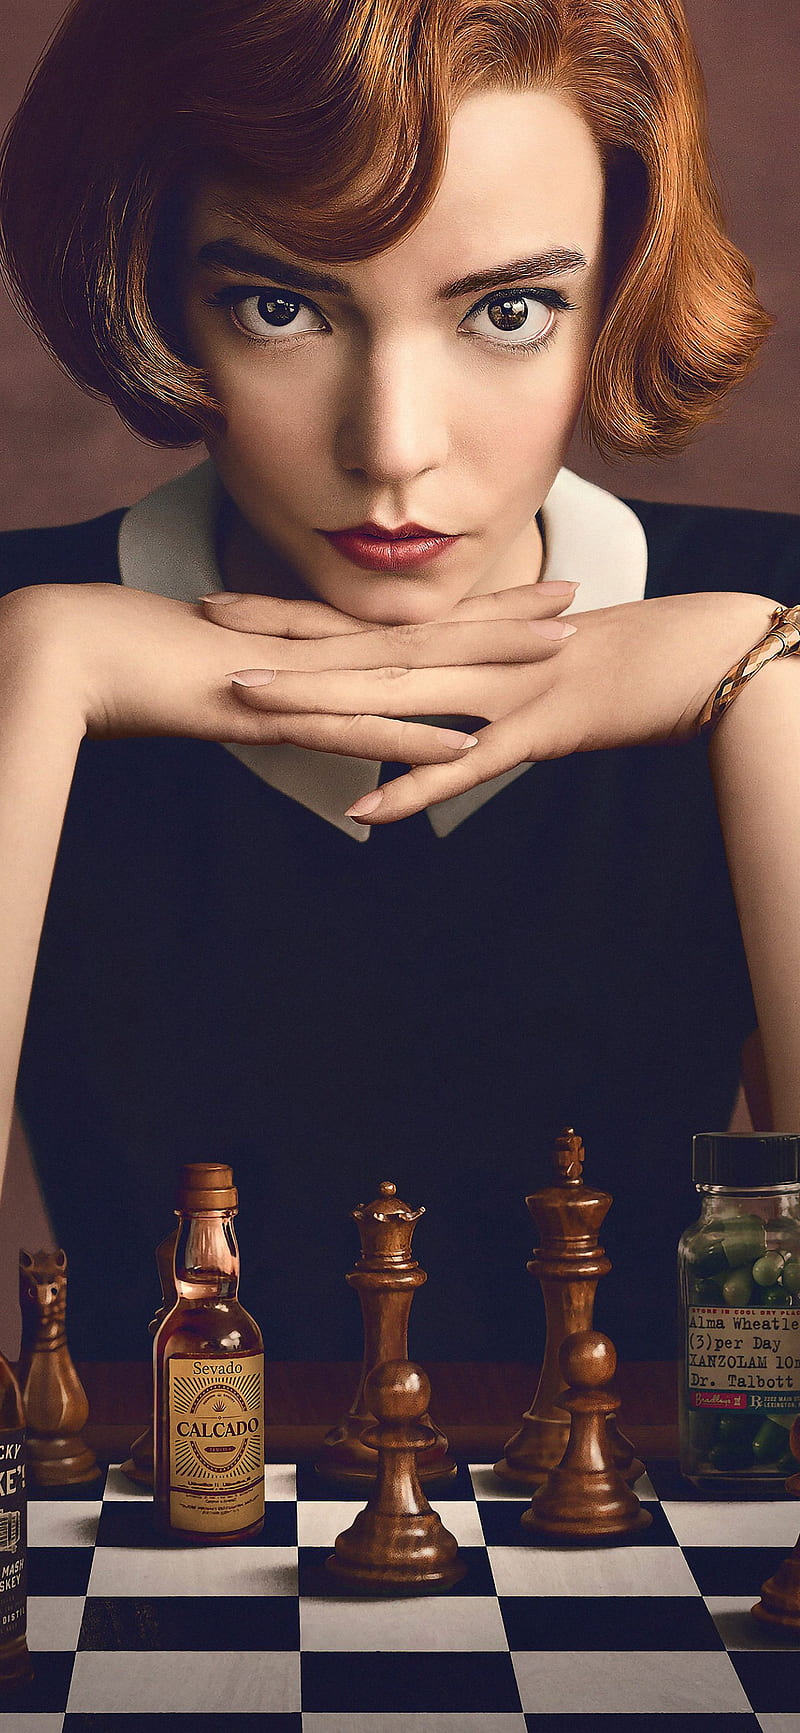 OC] Beth Harmon, from The Queen's Gambit : r/fanart